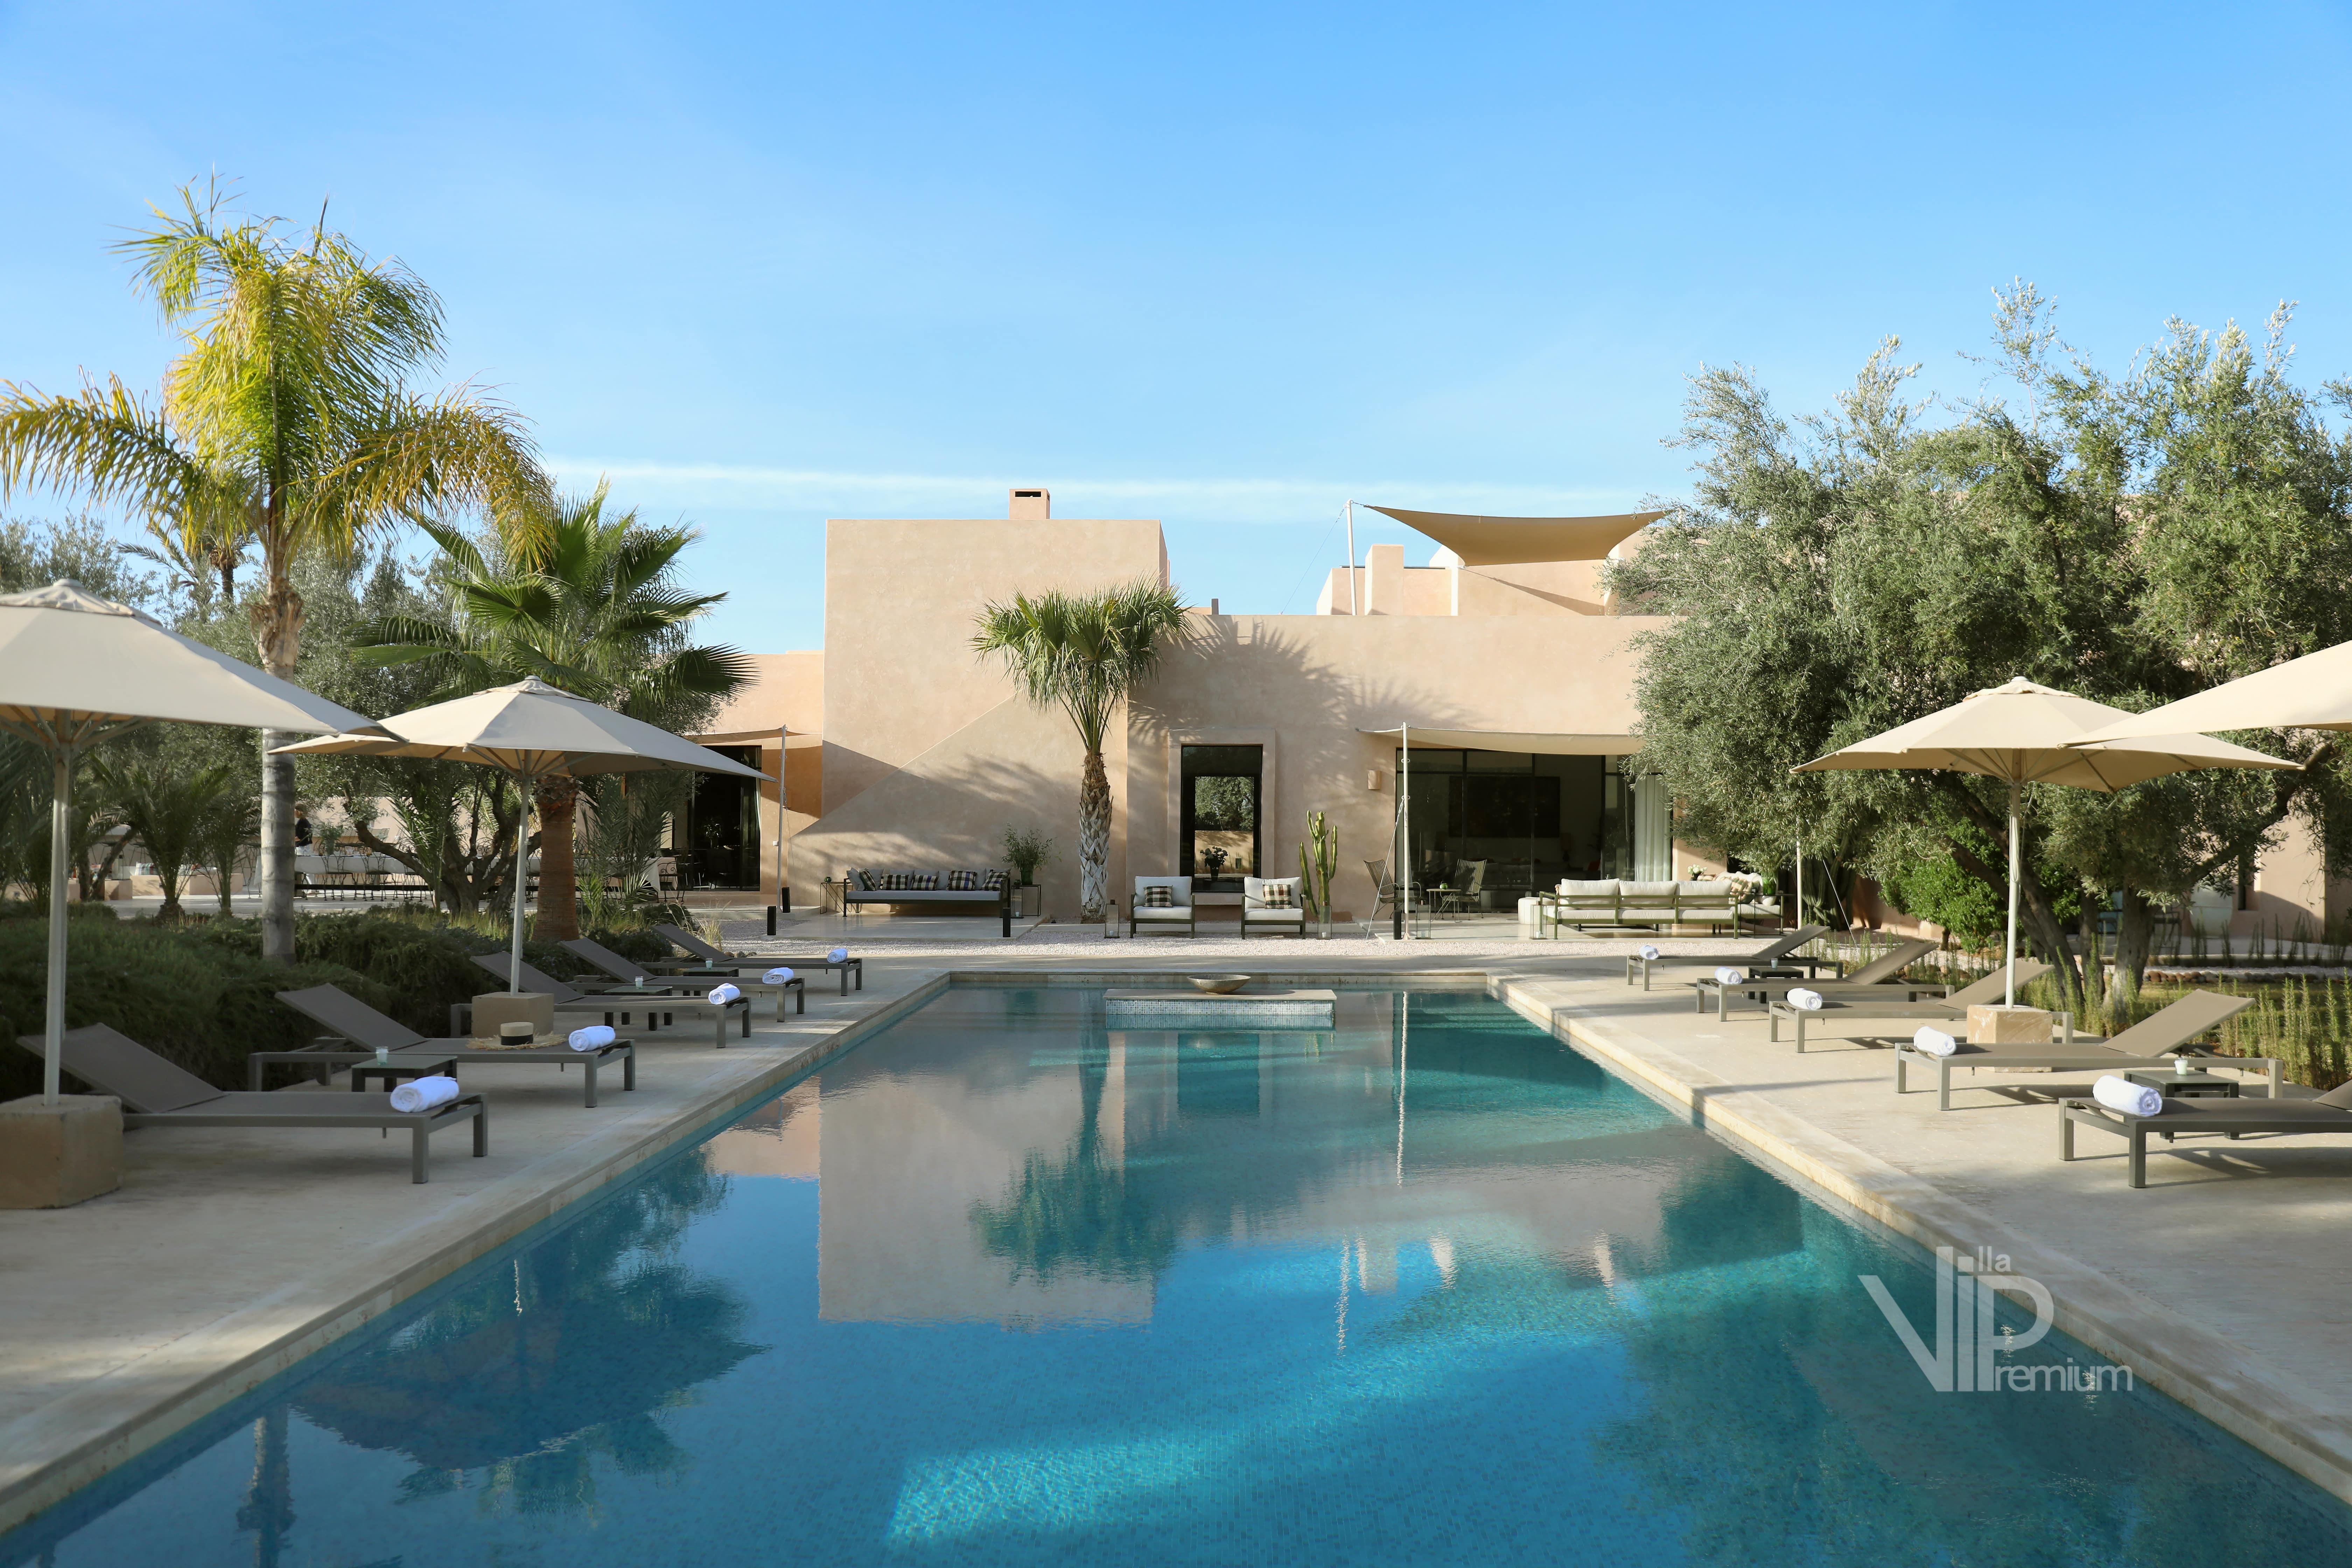 Location Villa Amerina Marrakech